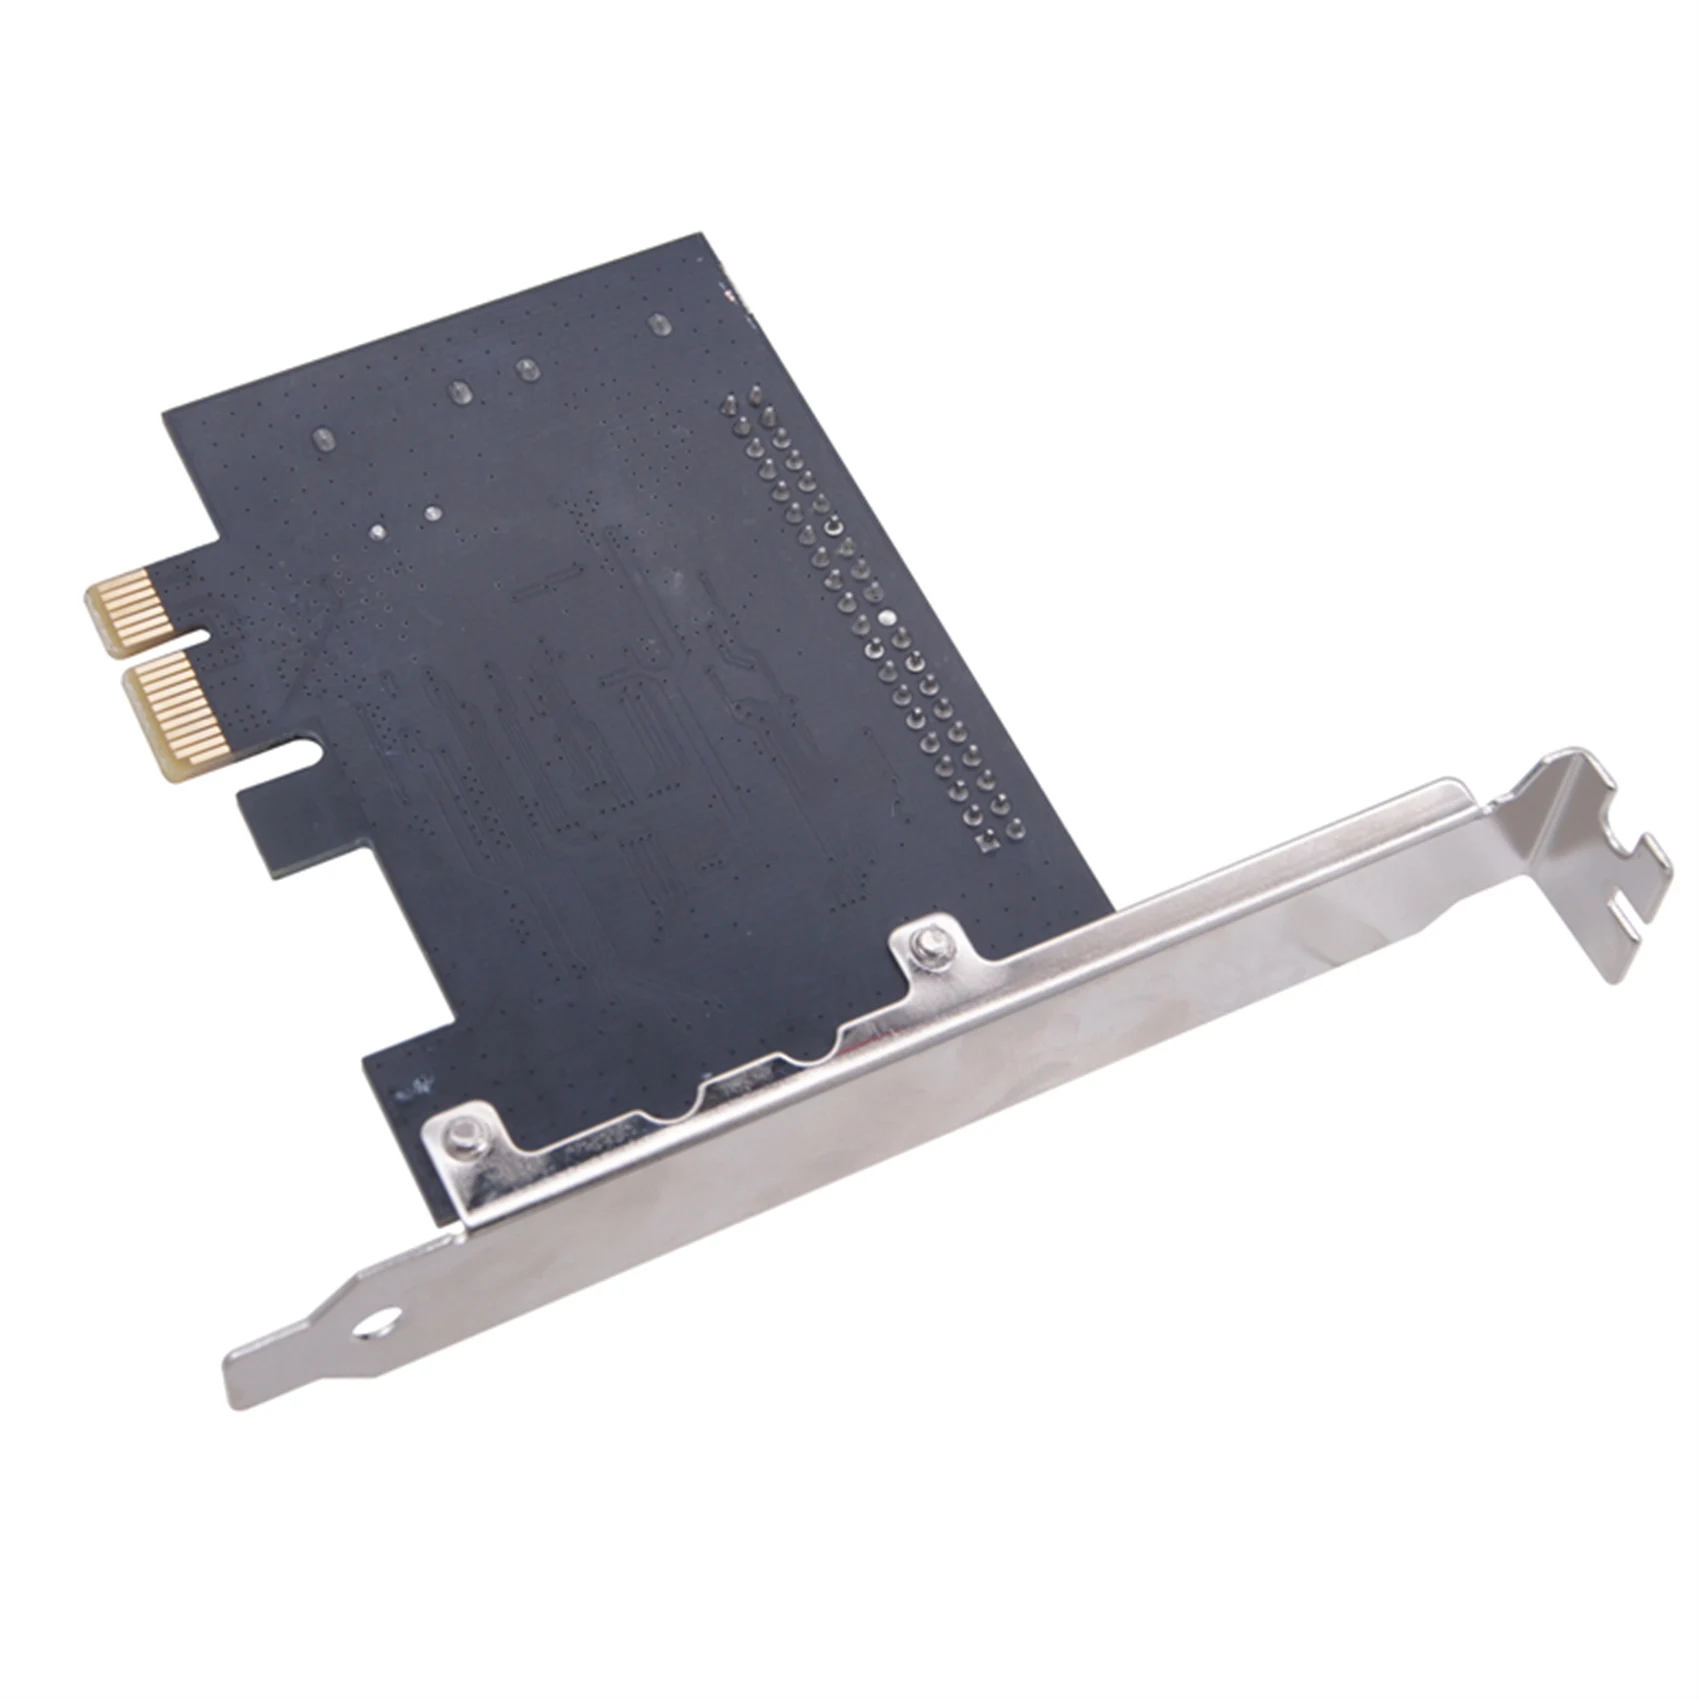 Настолна графична карта PCI E с 2-пристанищен адаптер SATA, карта за разширение PCI E с SATA IDE, 3,5-инчовата картаIDE-адаптер . ' - ' . 5